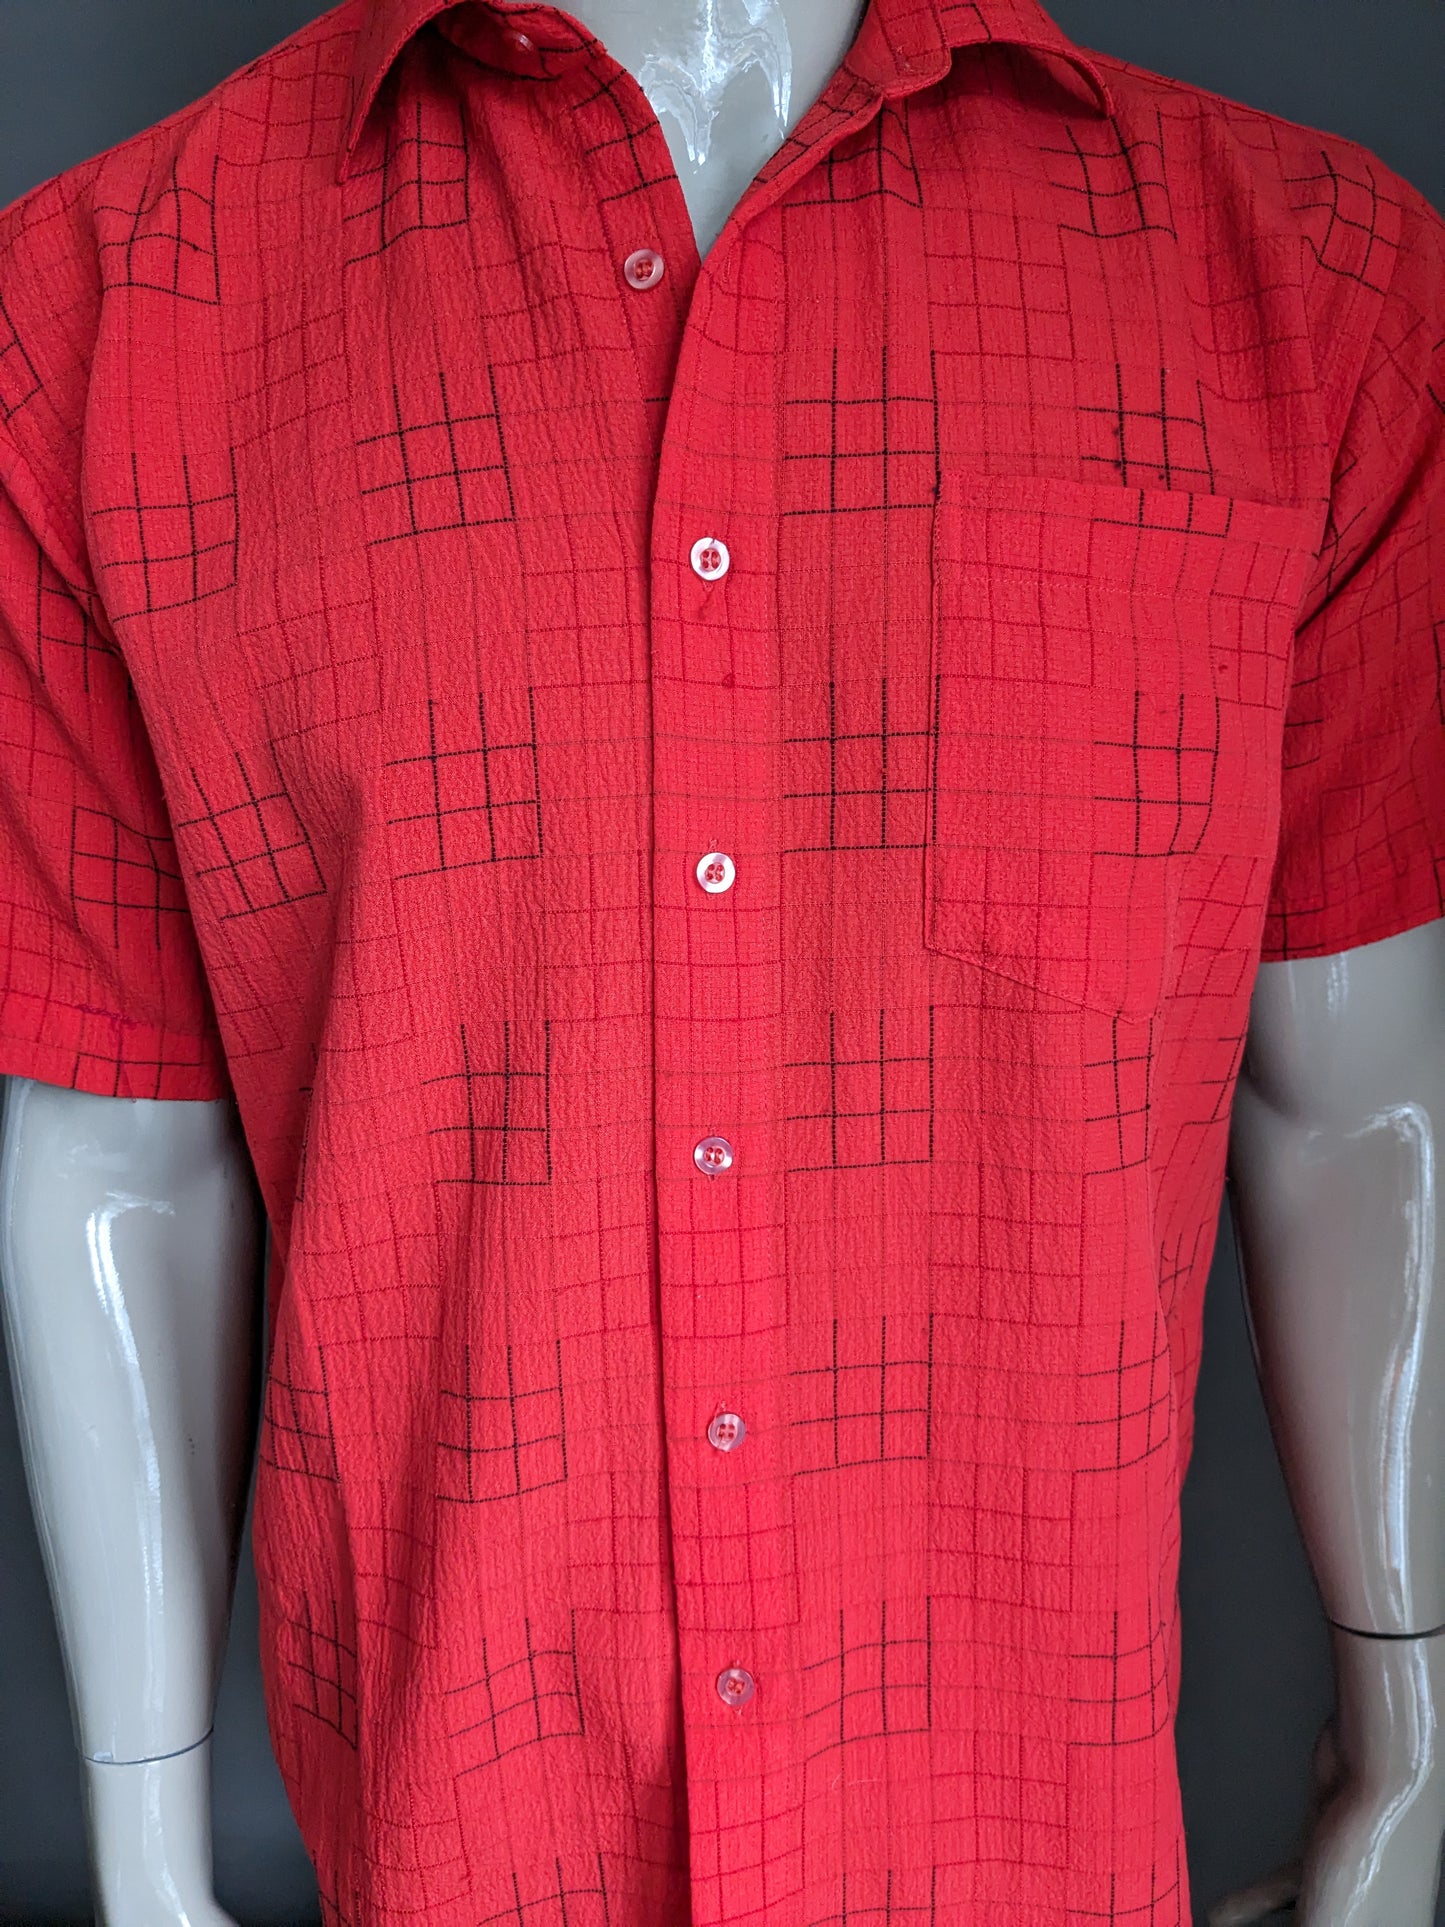 Shirt Shirt vintage Century manica corta. Rosso nero controllato. Taglia L.